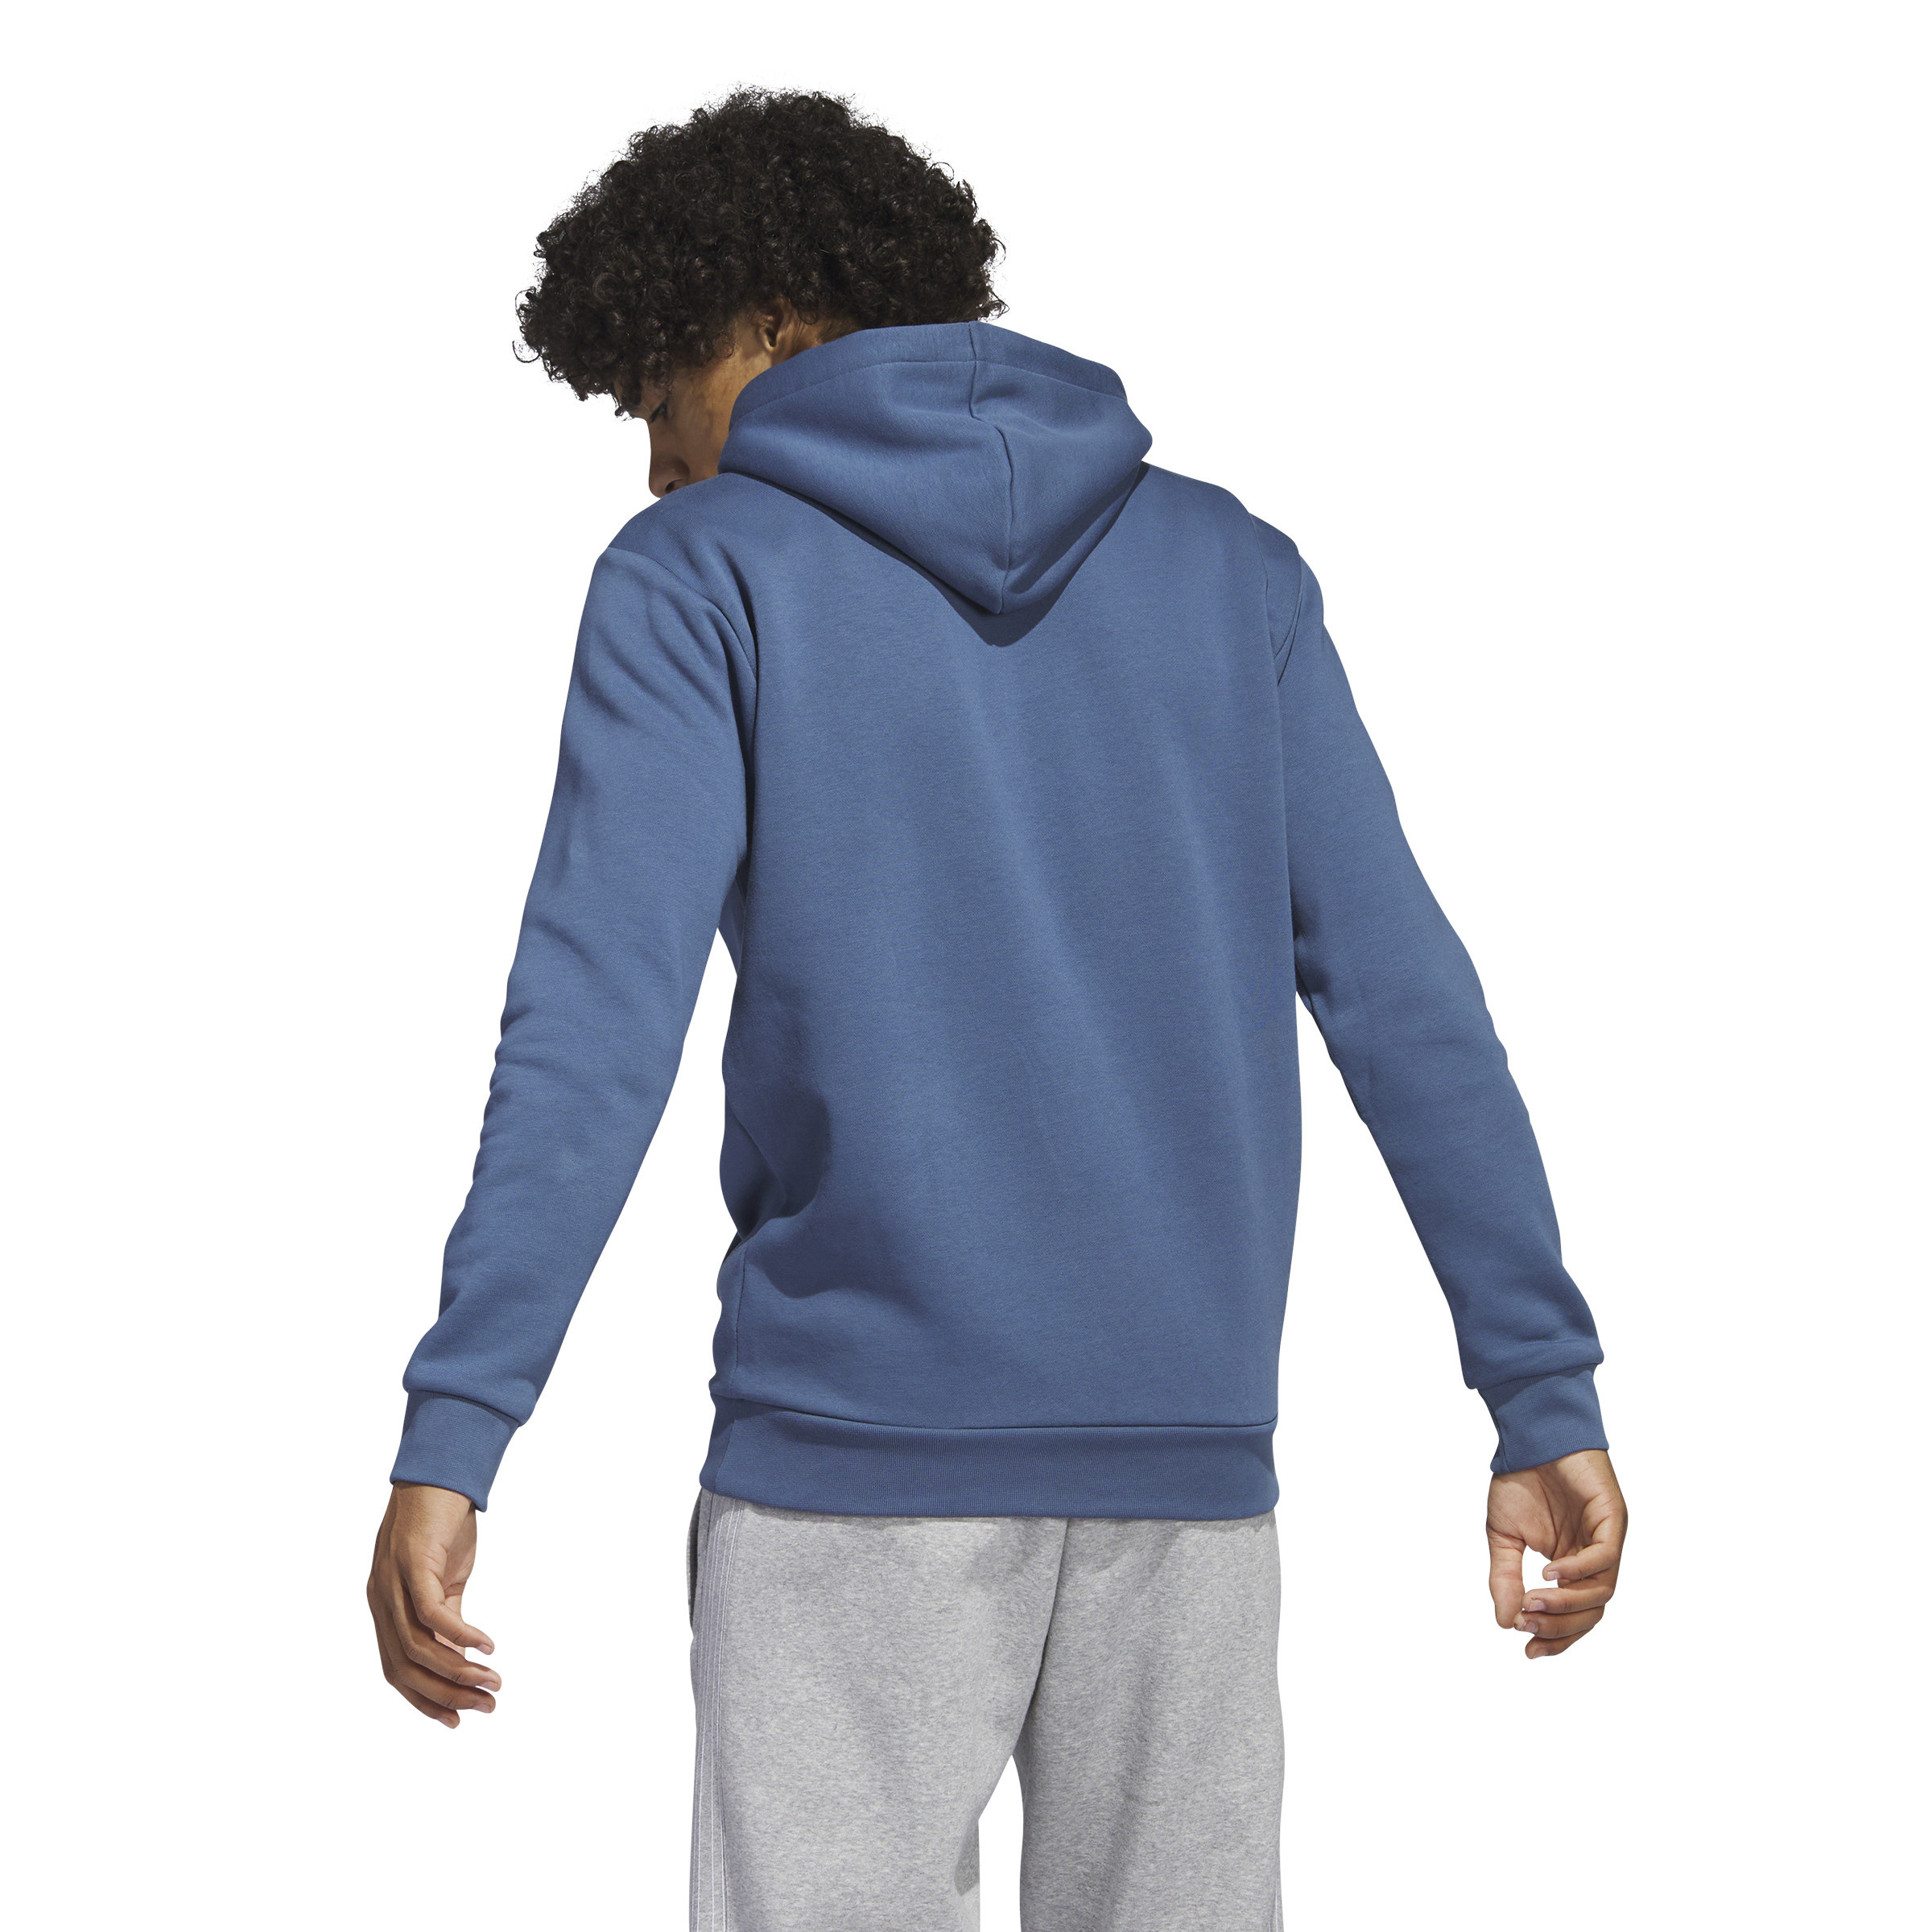 Adidas - Hooded sweatshirt with logo, Aviation Blue, large image number 5